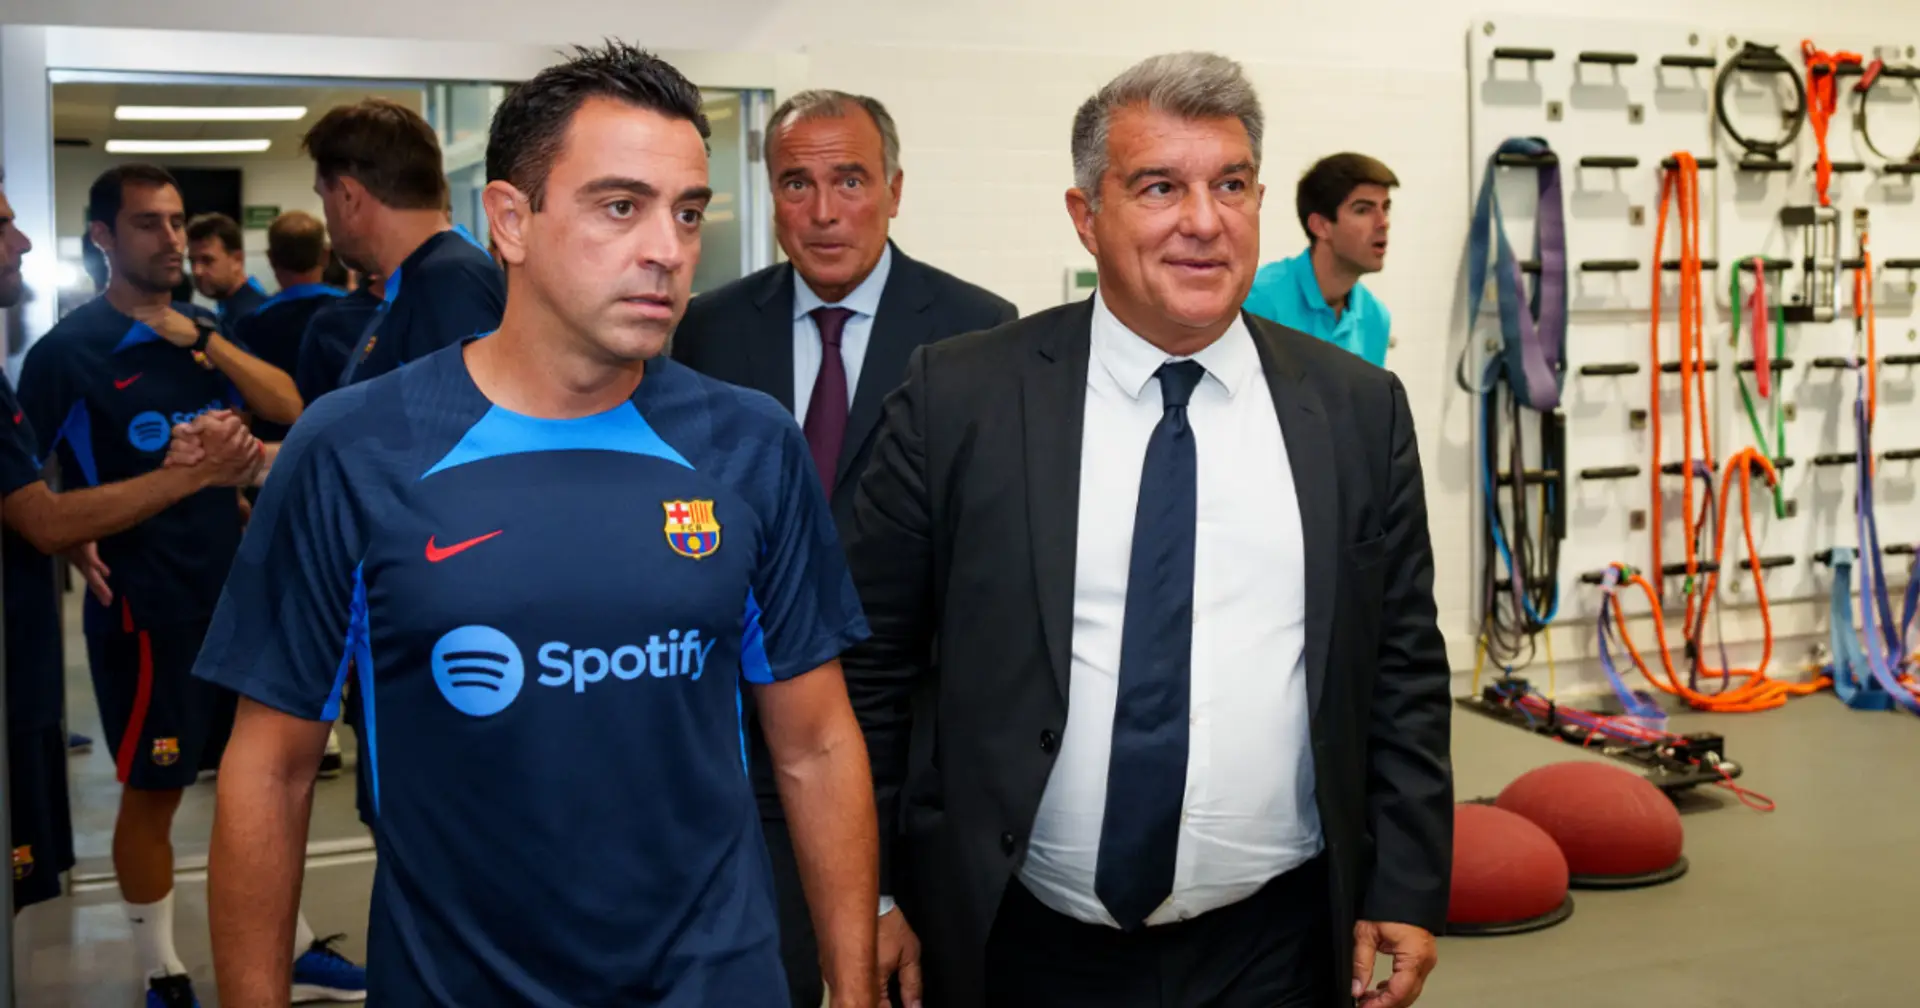 Laporta möchte, dass Xavi bei Barça bleibt: "Ich habe ihn gefragt, ob er seine Meinung ändern könnte, und ihm geraten, sich einfach zu entspannen" 